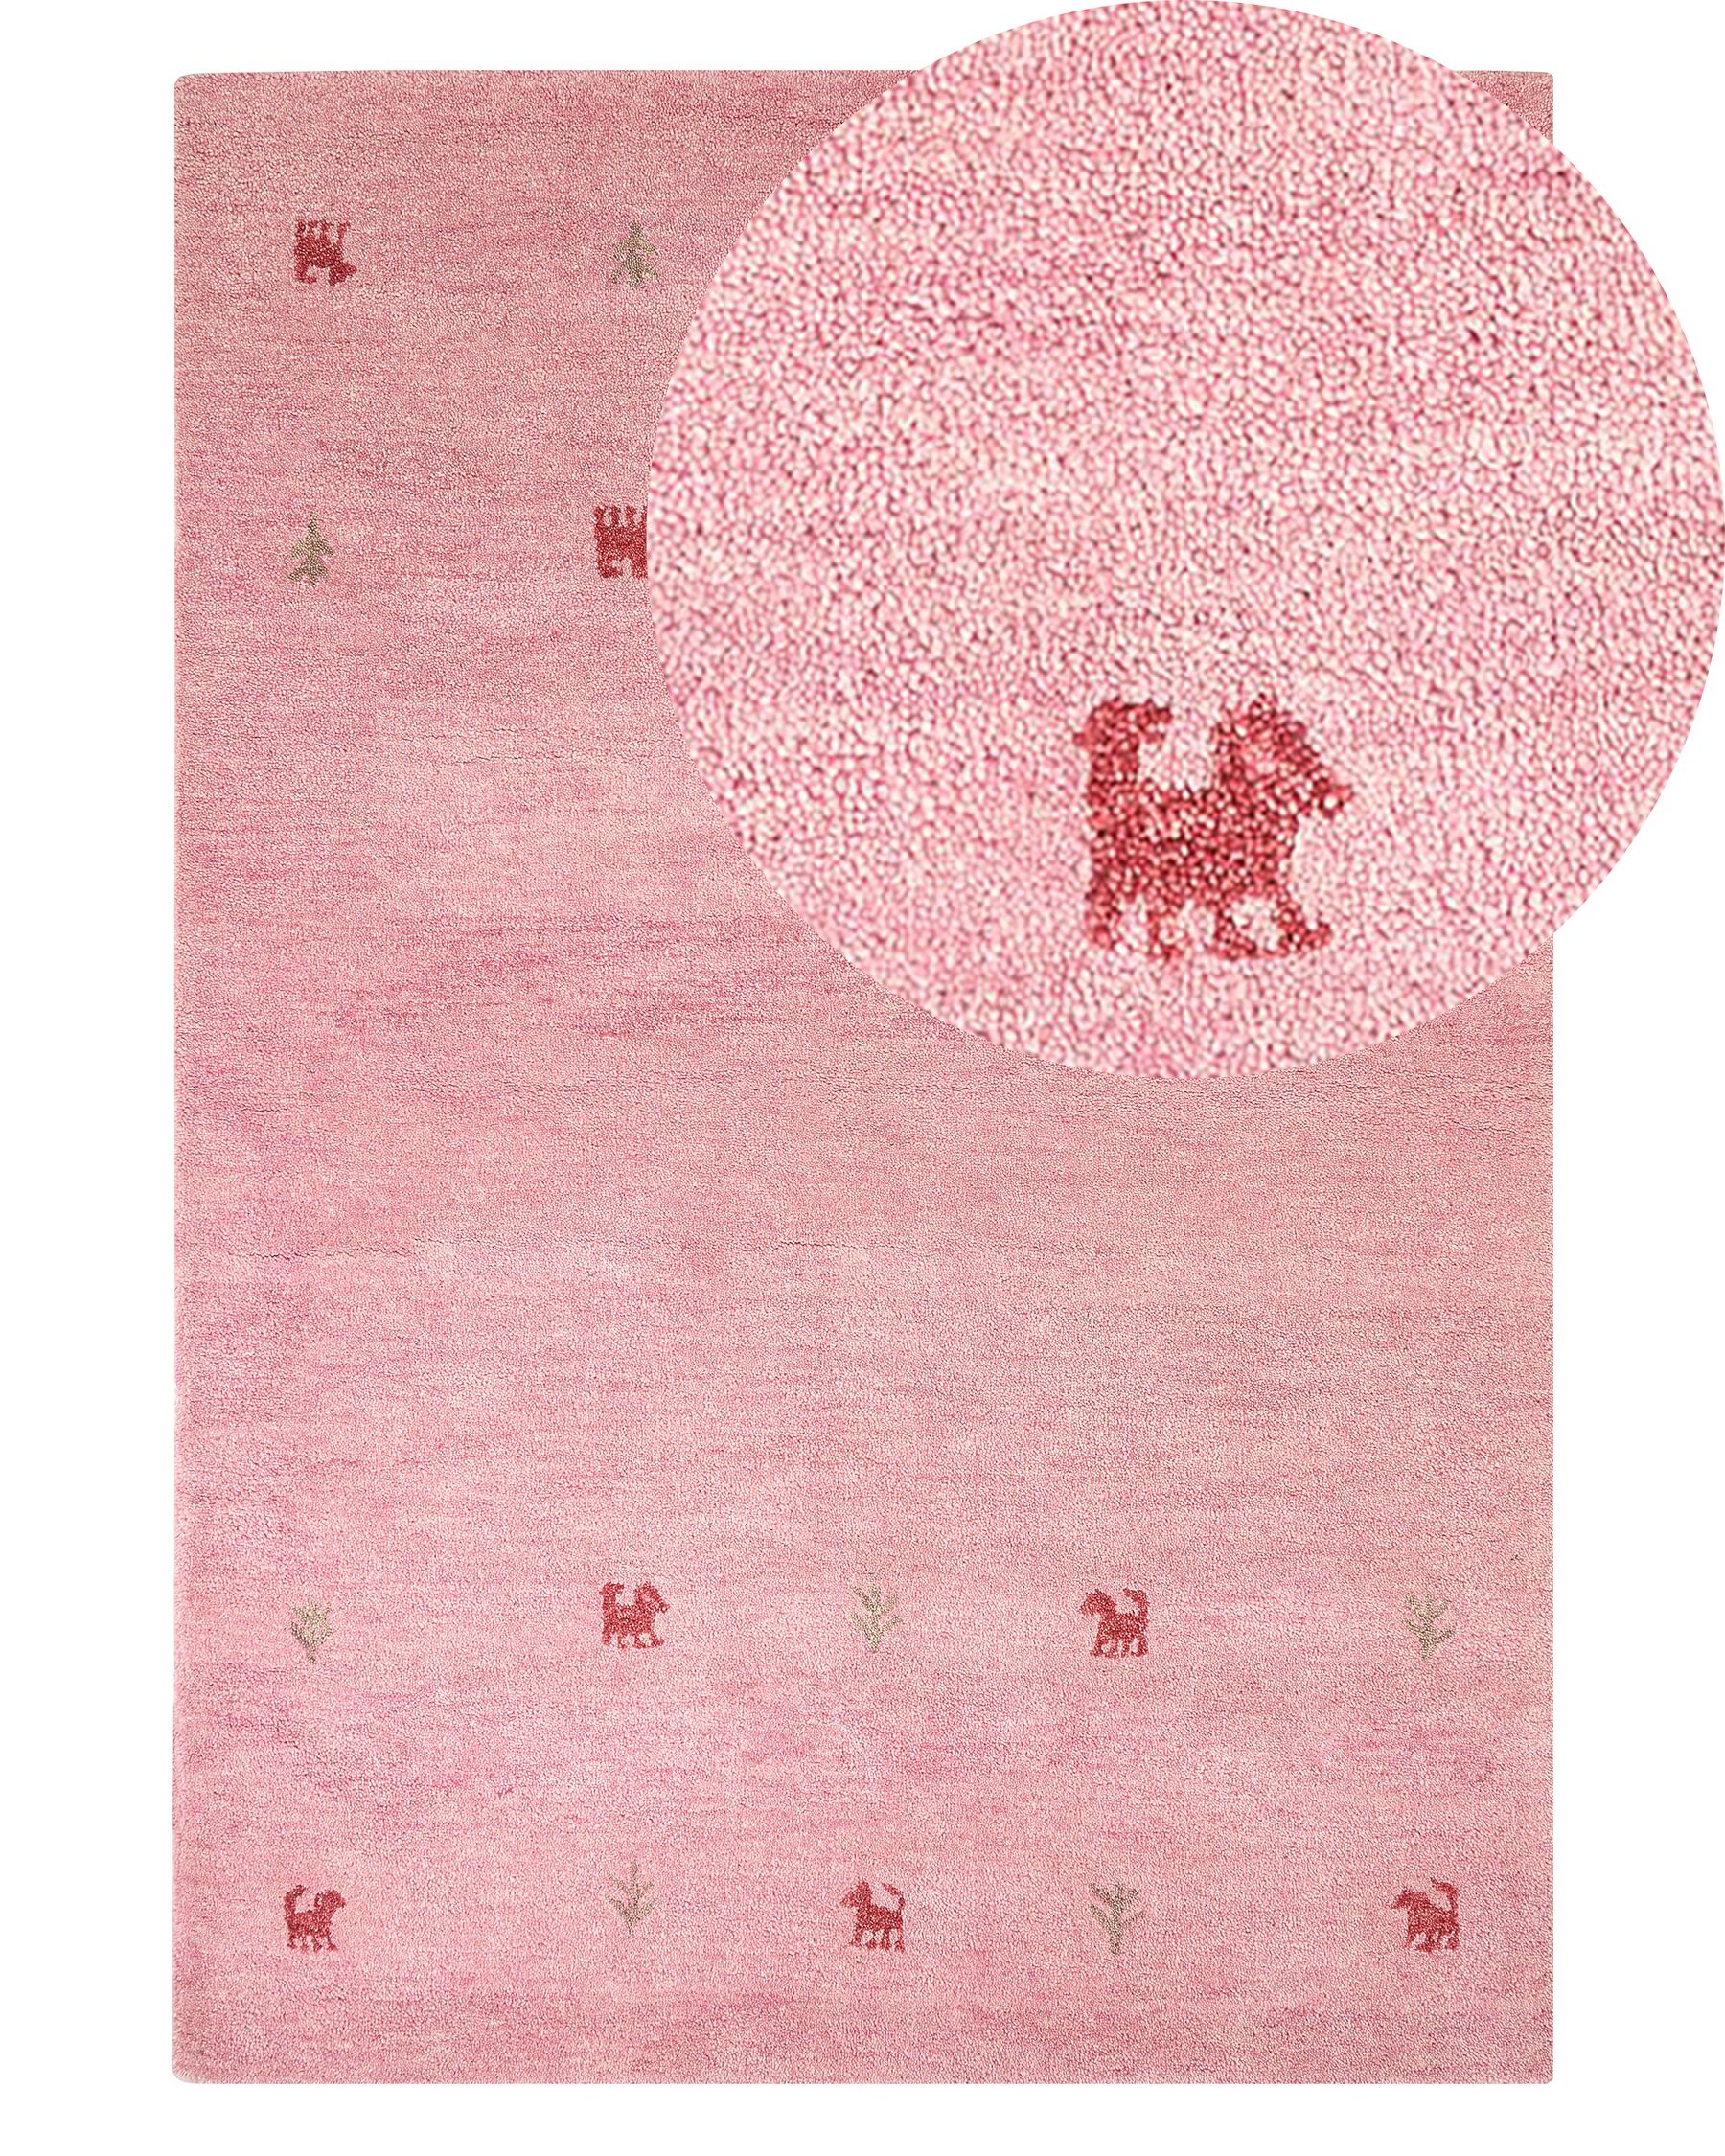 Vlnený koberec gabbeh 140 x 200 cm ružový YULAFI_855774